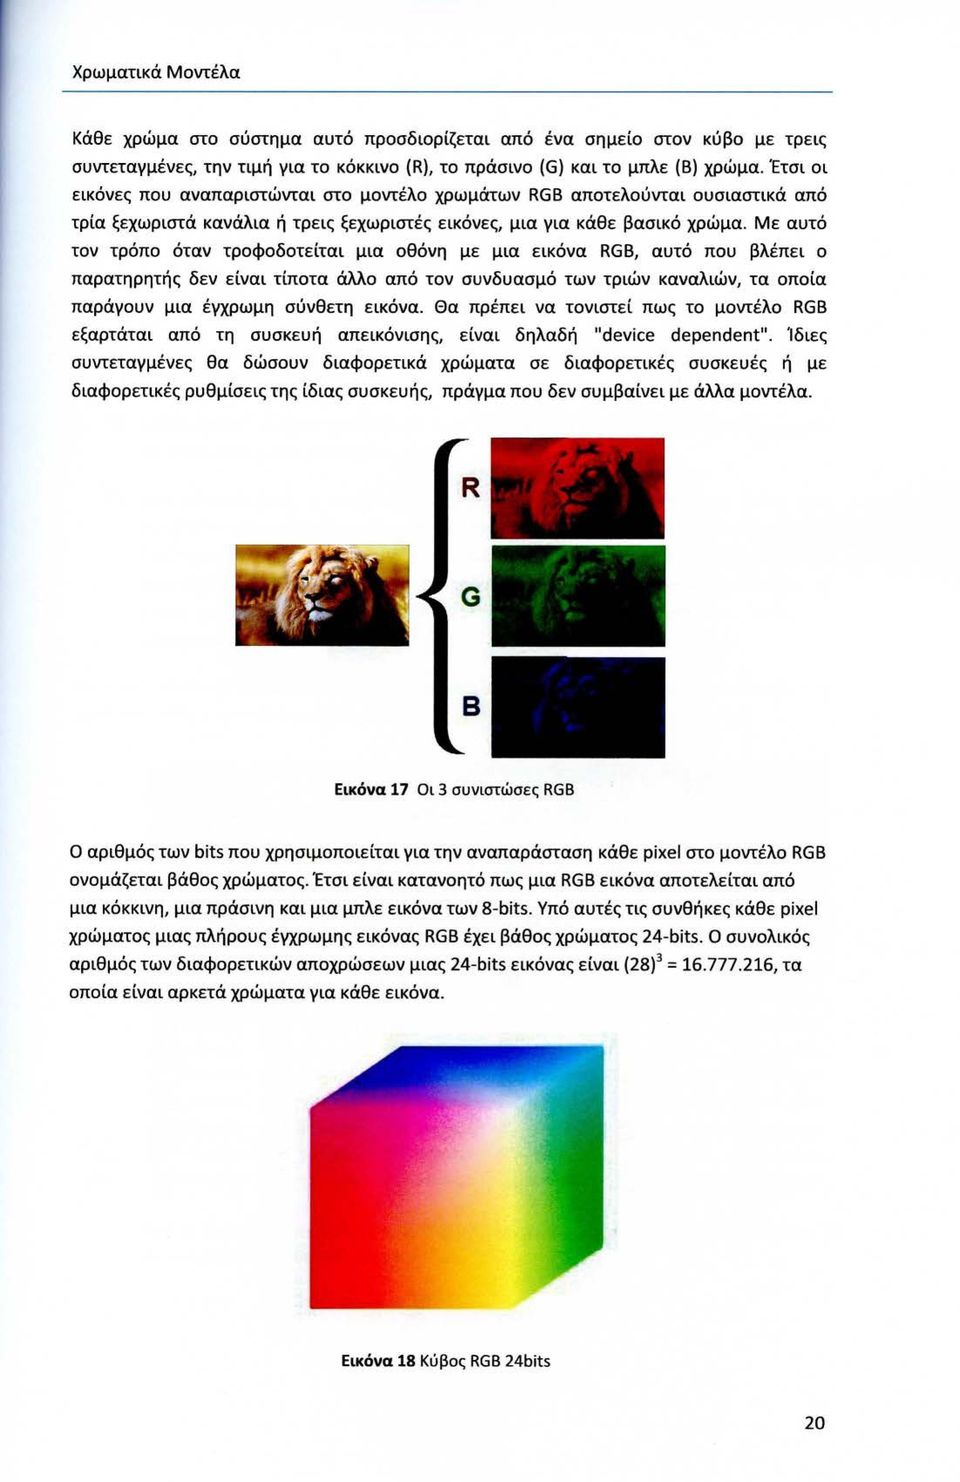 Με αυτό τον τρόπο όταν τροφοδοτείται μια οθόνη με μια εικόνα RGB, αυτό που βλέπει ο παρατηρητής δεν είναι τίποτα άλλο από τον συνδυασμό των τριών καναλιών, τα οποία παράγουν μια έγχρωμη σύνθετη